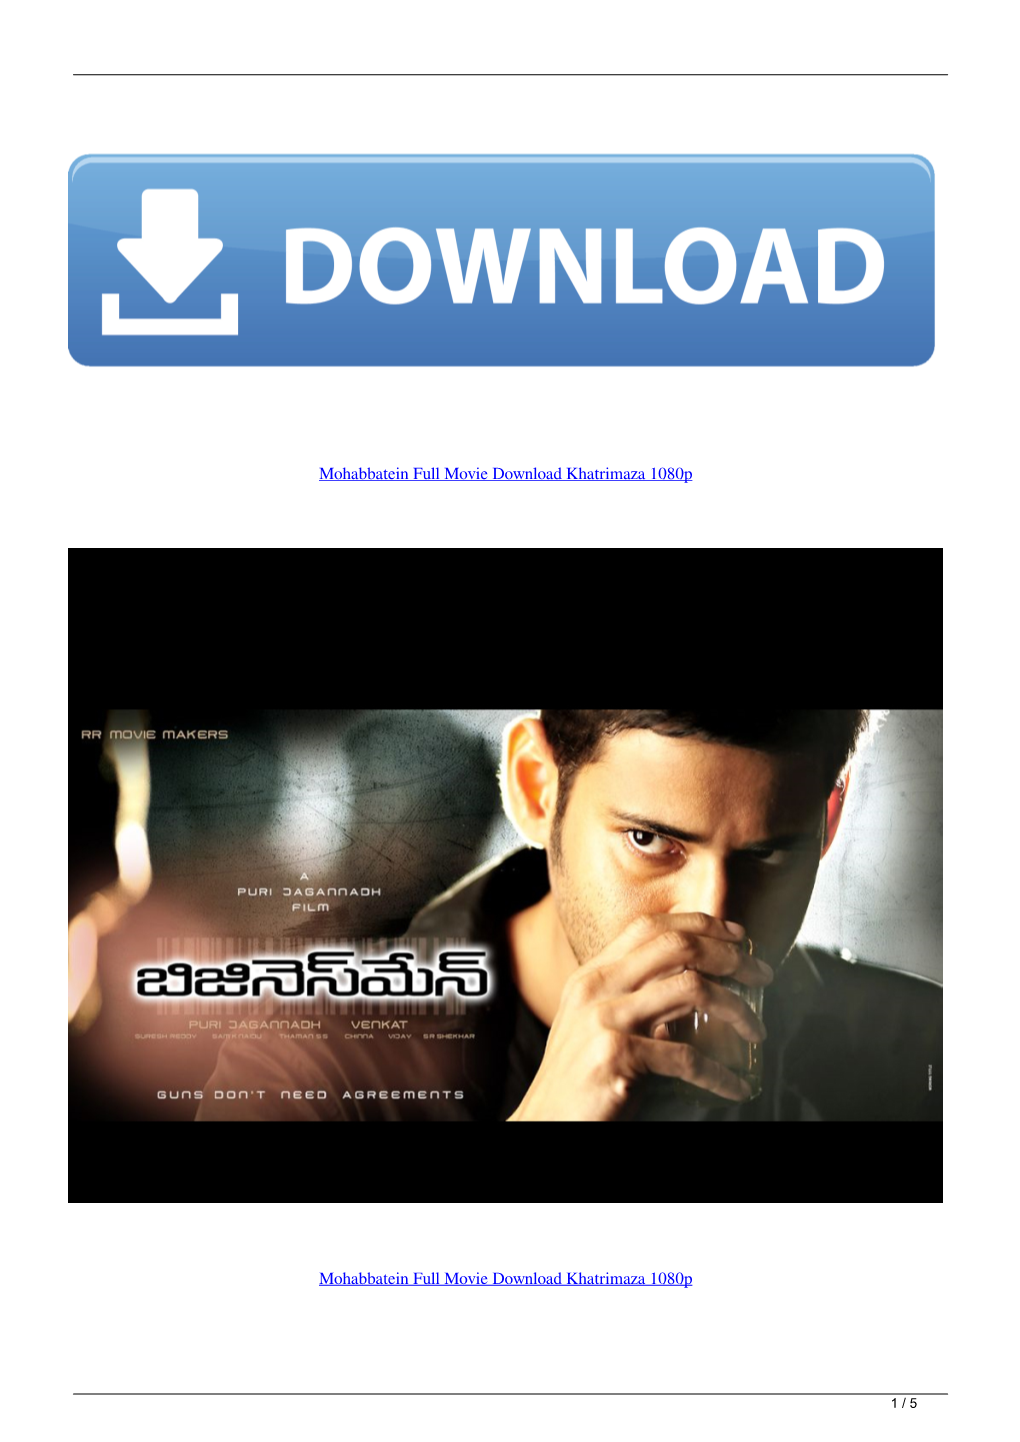 Mohabbatein Full Movie Download Khatrimaza 1080P